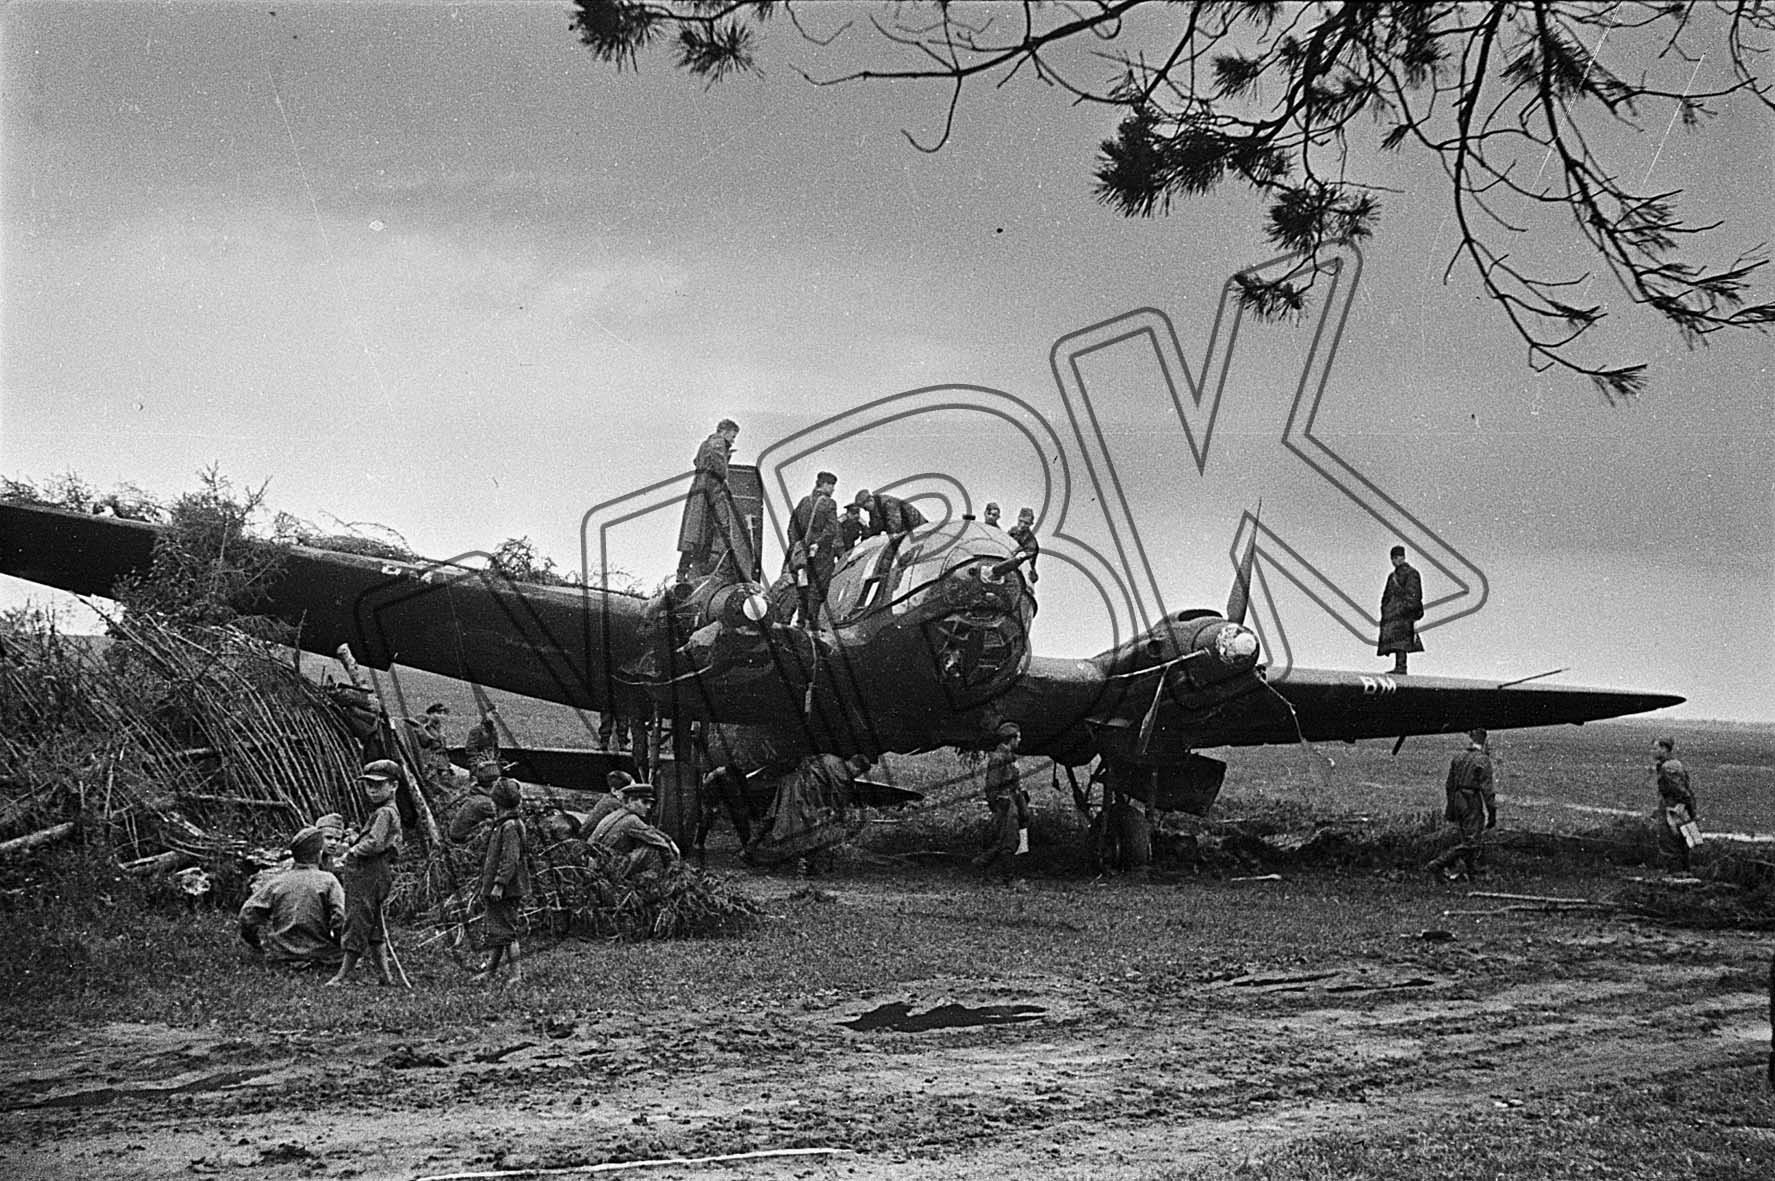 Fotografie: Notgelandete deutsche "Heinkel III", Gebiet Kursk, 26. Juni 1943 (Museum Berlin-Karlshorst RR-P)